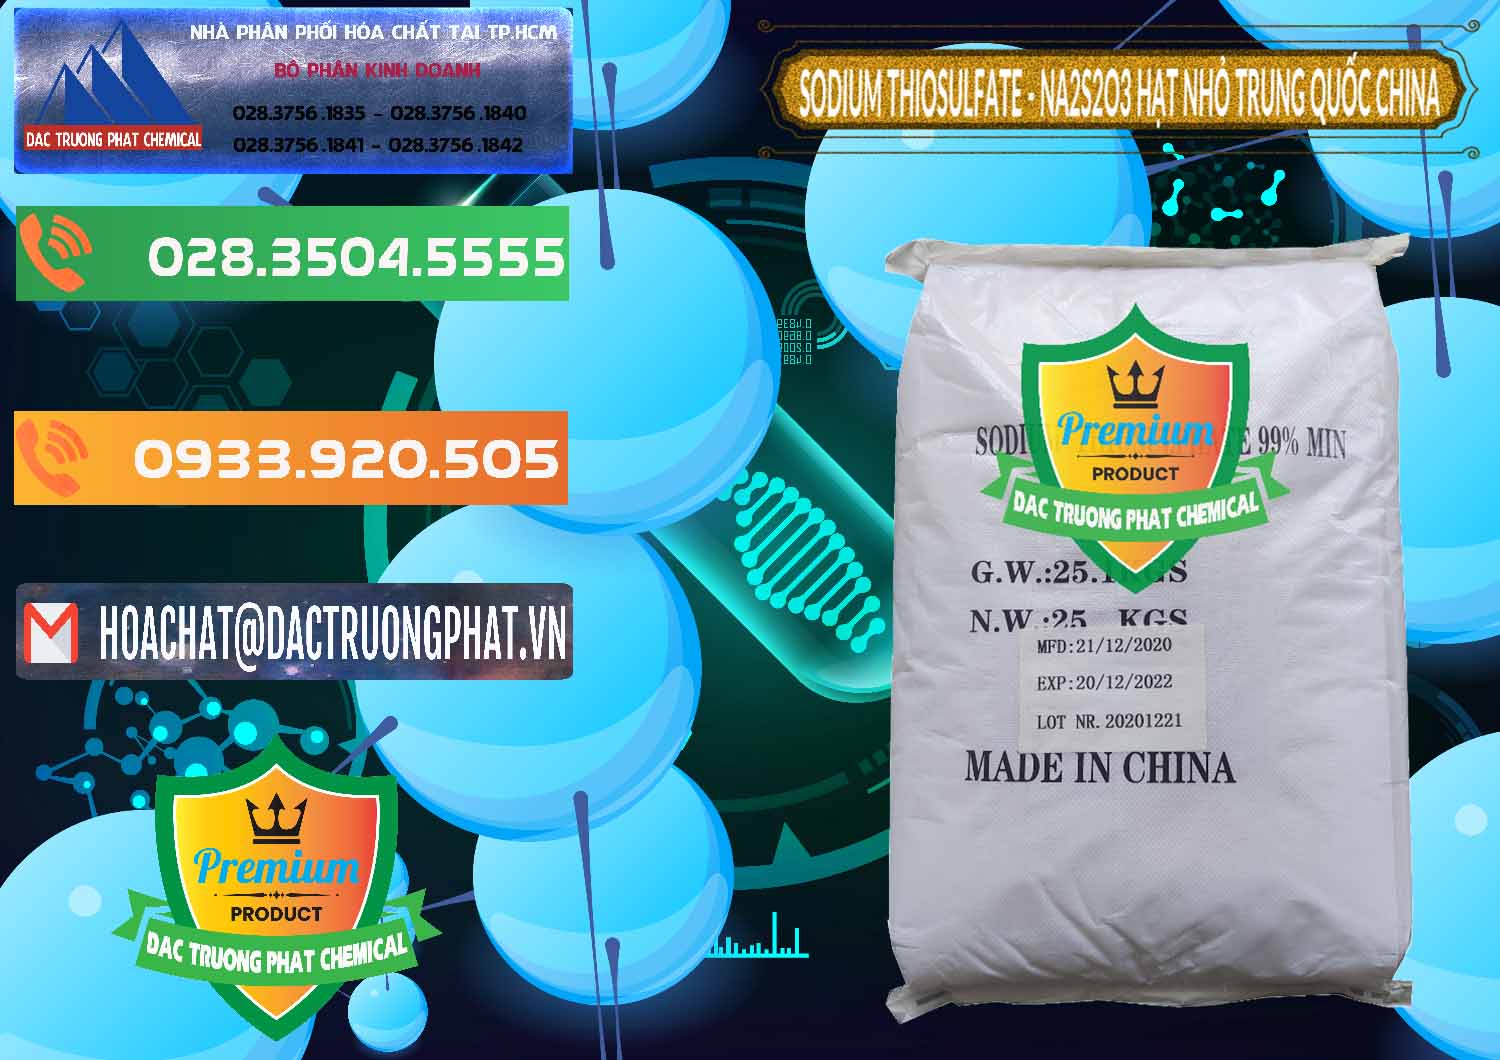 Nơi nhập khẩu & bán Sodium Thiosulfate - NA2S2O3 Hạt Nhỏ Trung Quốc China - 0204 - Cty nhập khẩu ( phân phối ) hóa chất tại TP.HCM - hoachatxulynuoc.com.vn